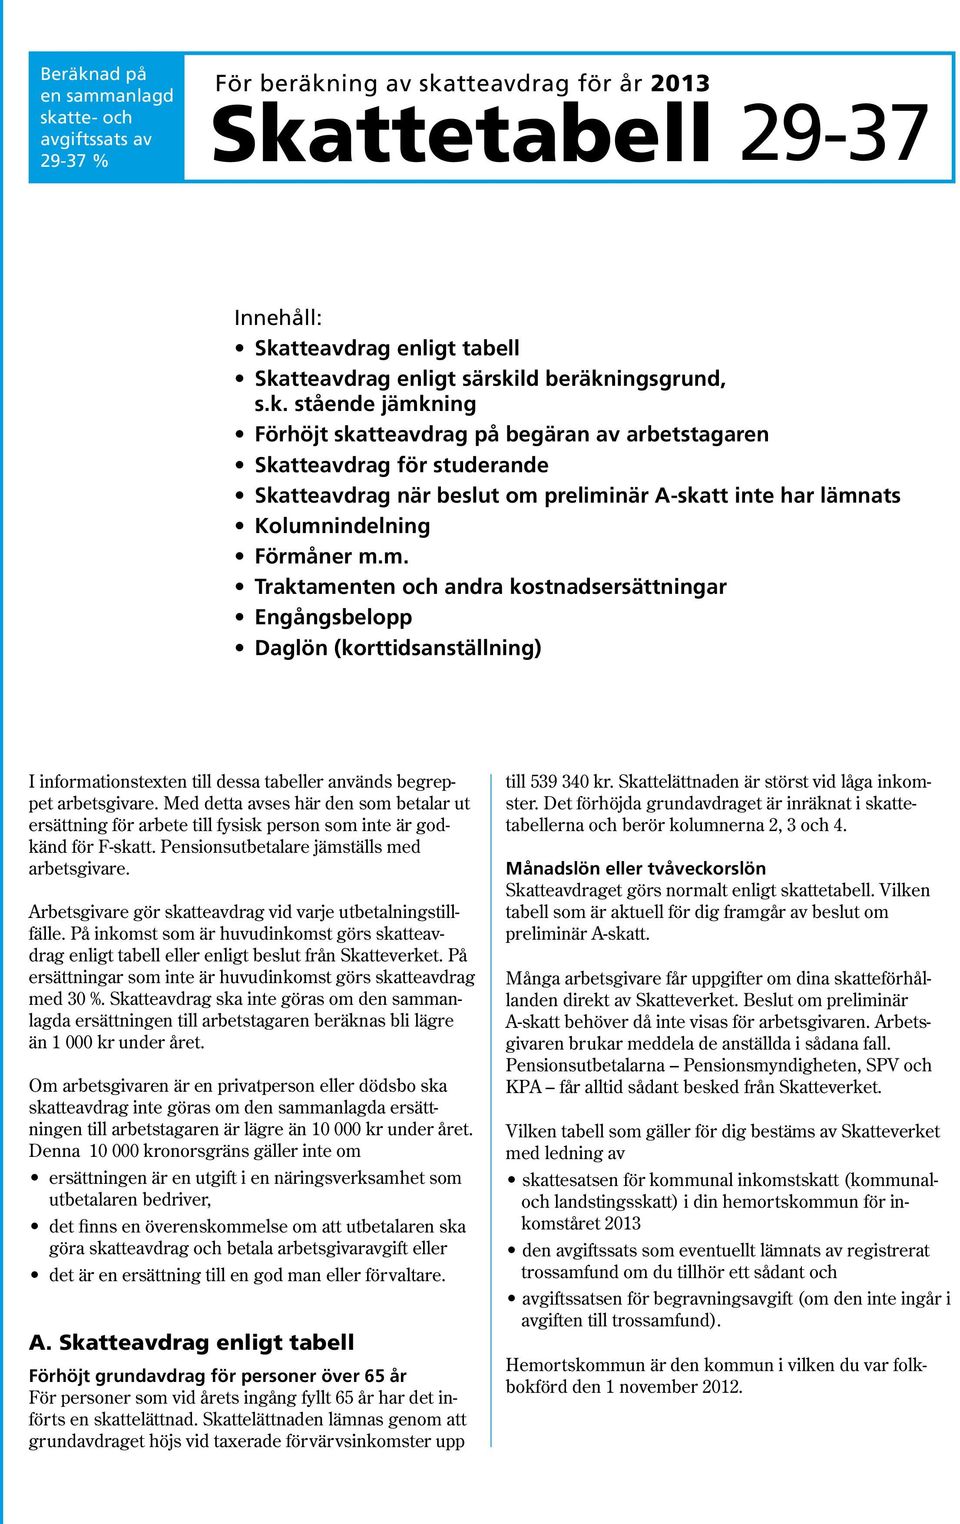 m. Traktamenten och andra kostnadsersättningar Engångsbelopp Daglön (korttidsanställning) I informationstexten till dessa tabeller används begreppet arbetsgivare.